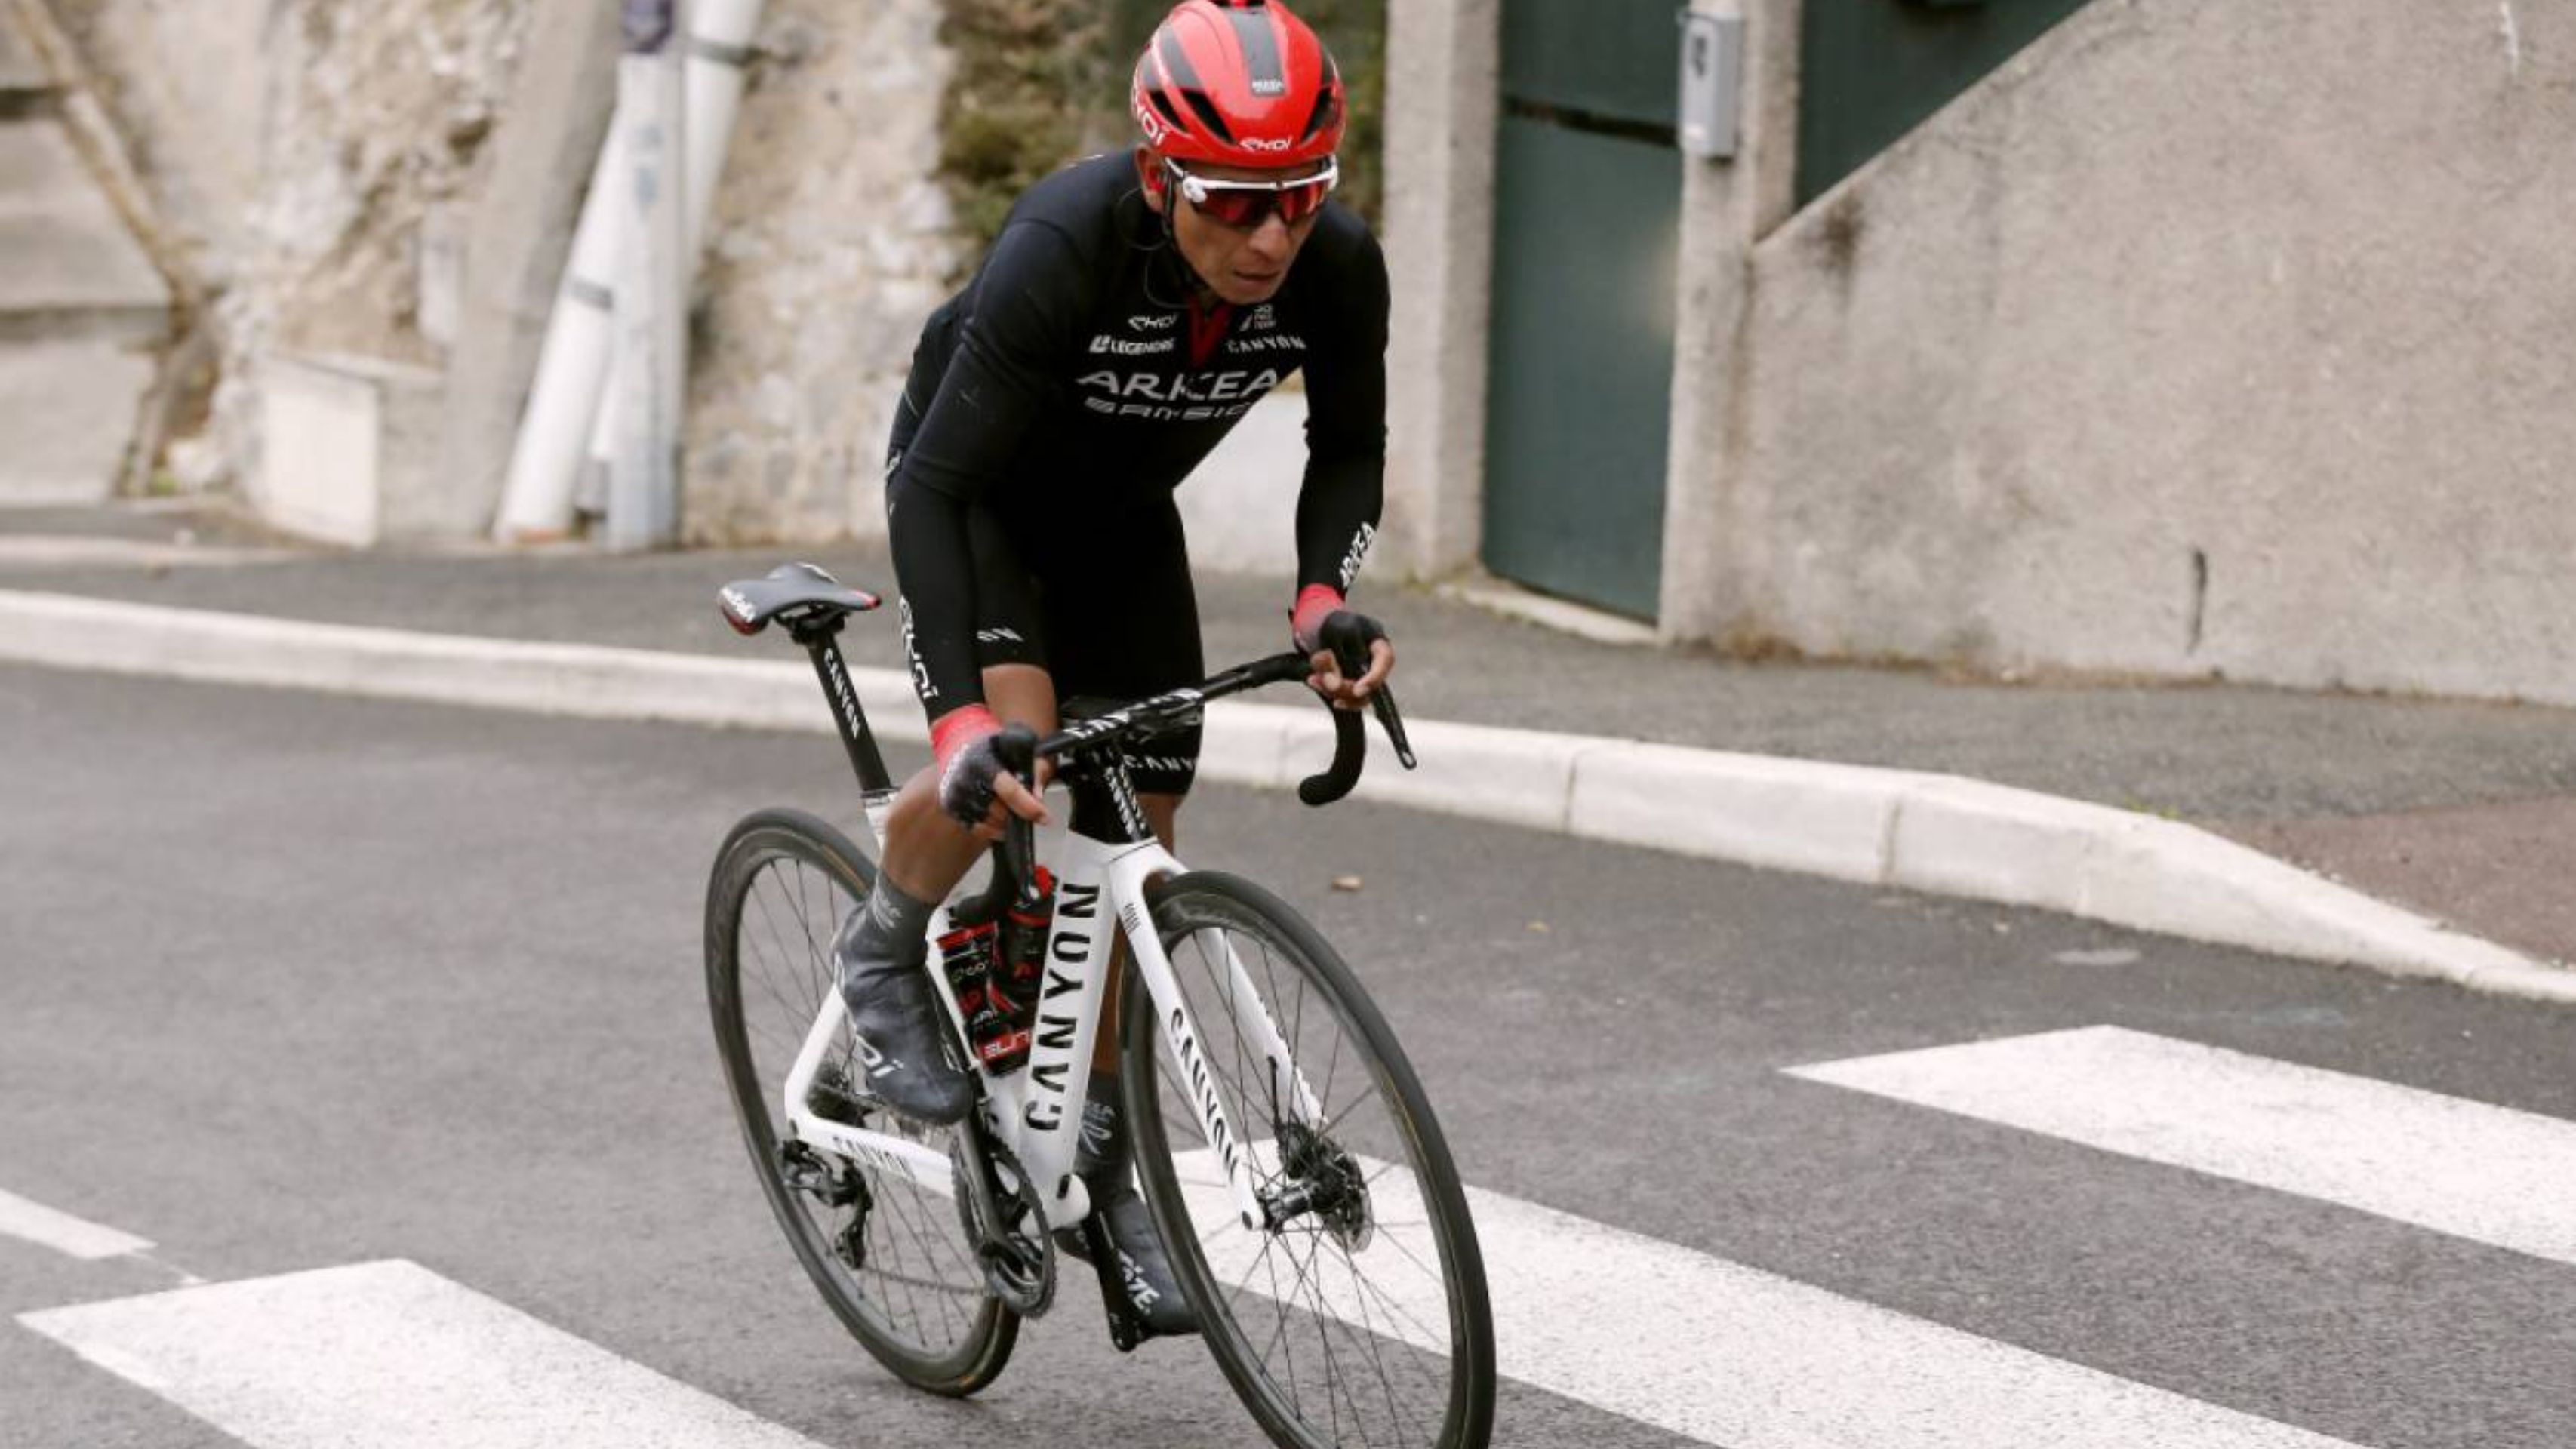 El Arkea Samsic con Nairo confirmado para La Vuelta a España